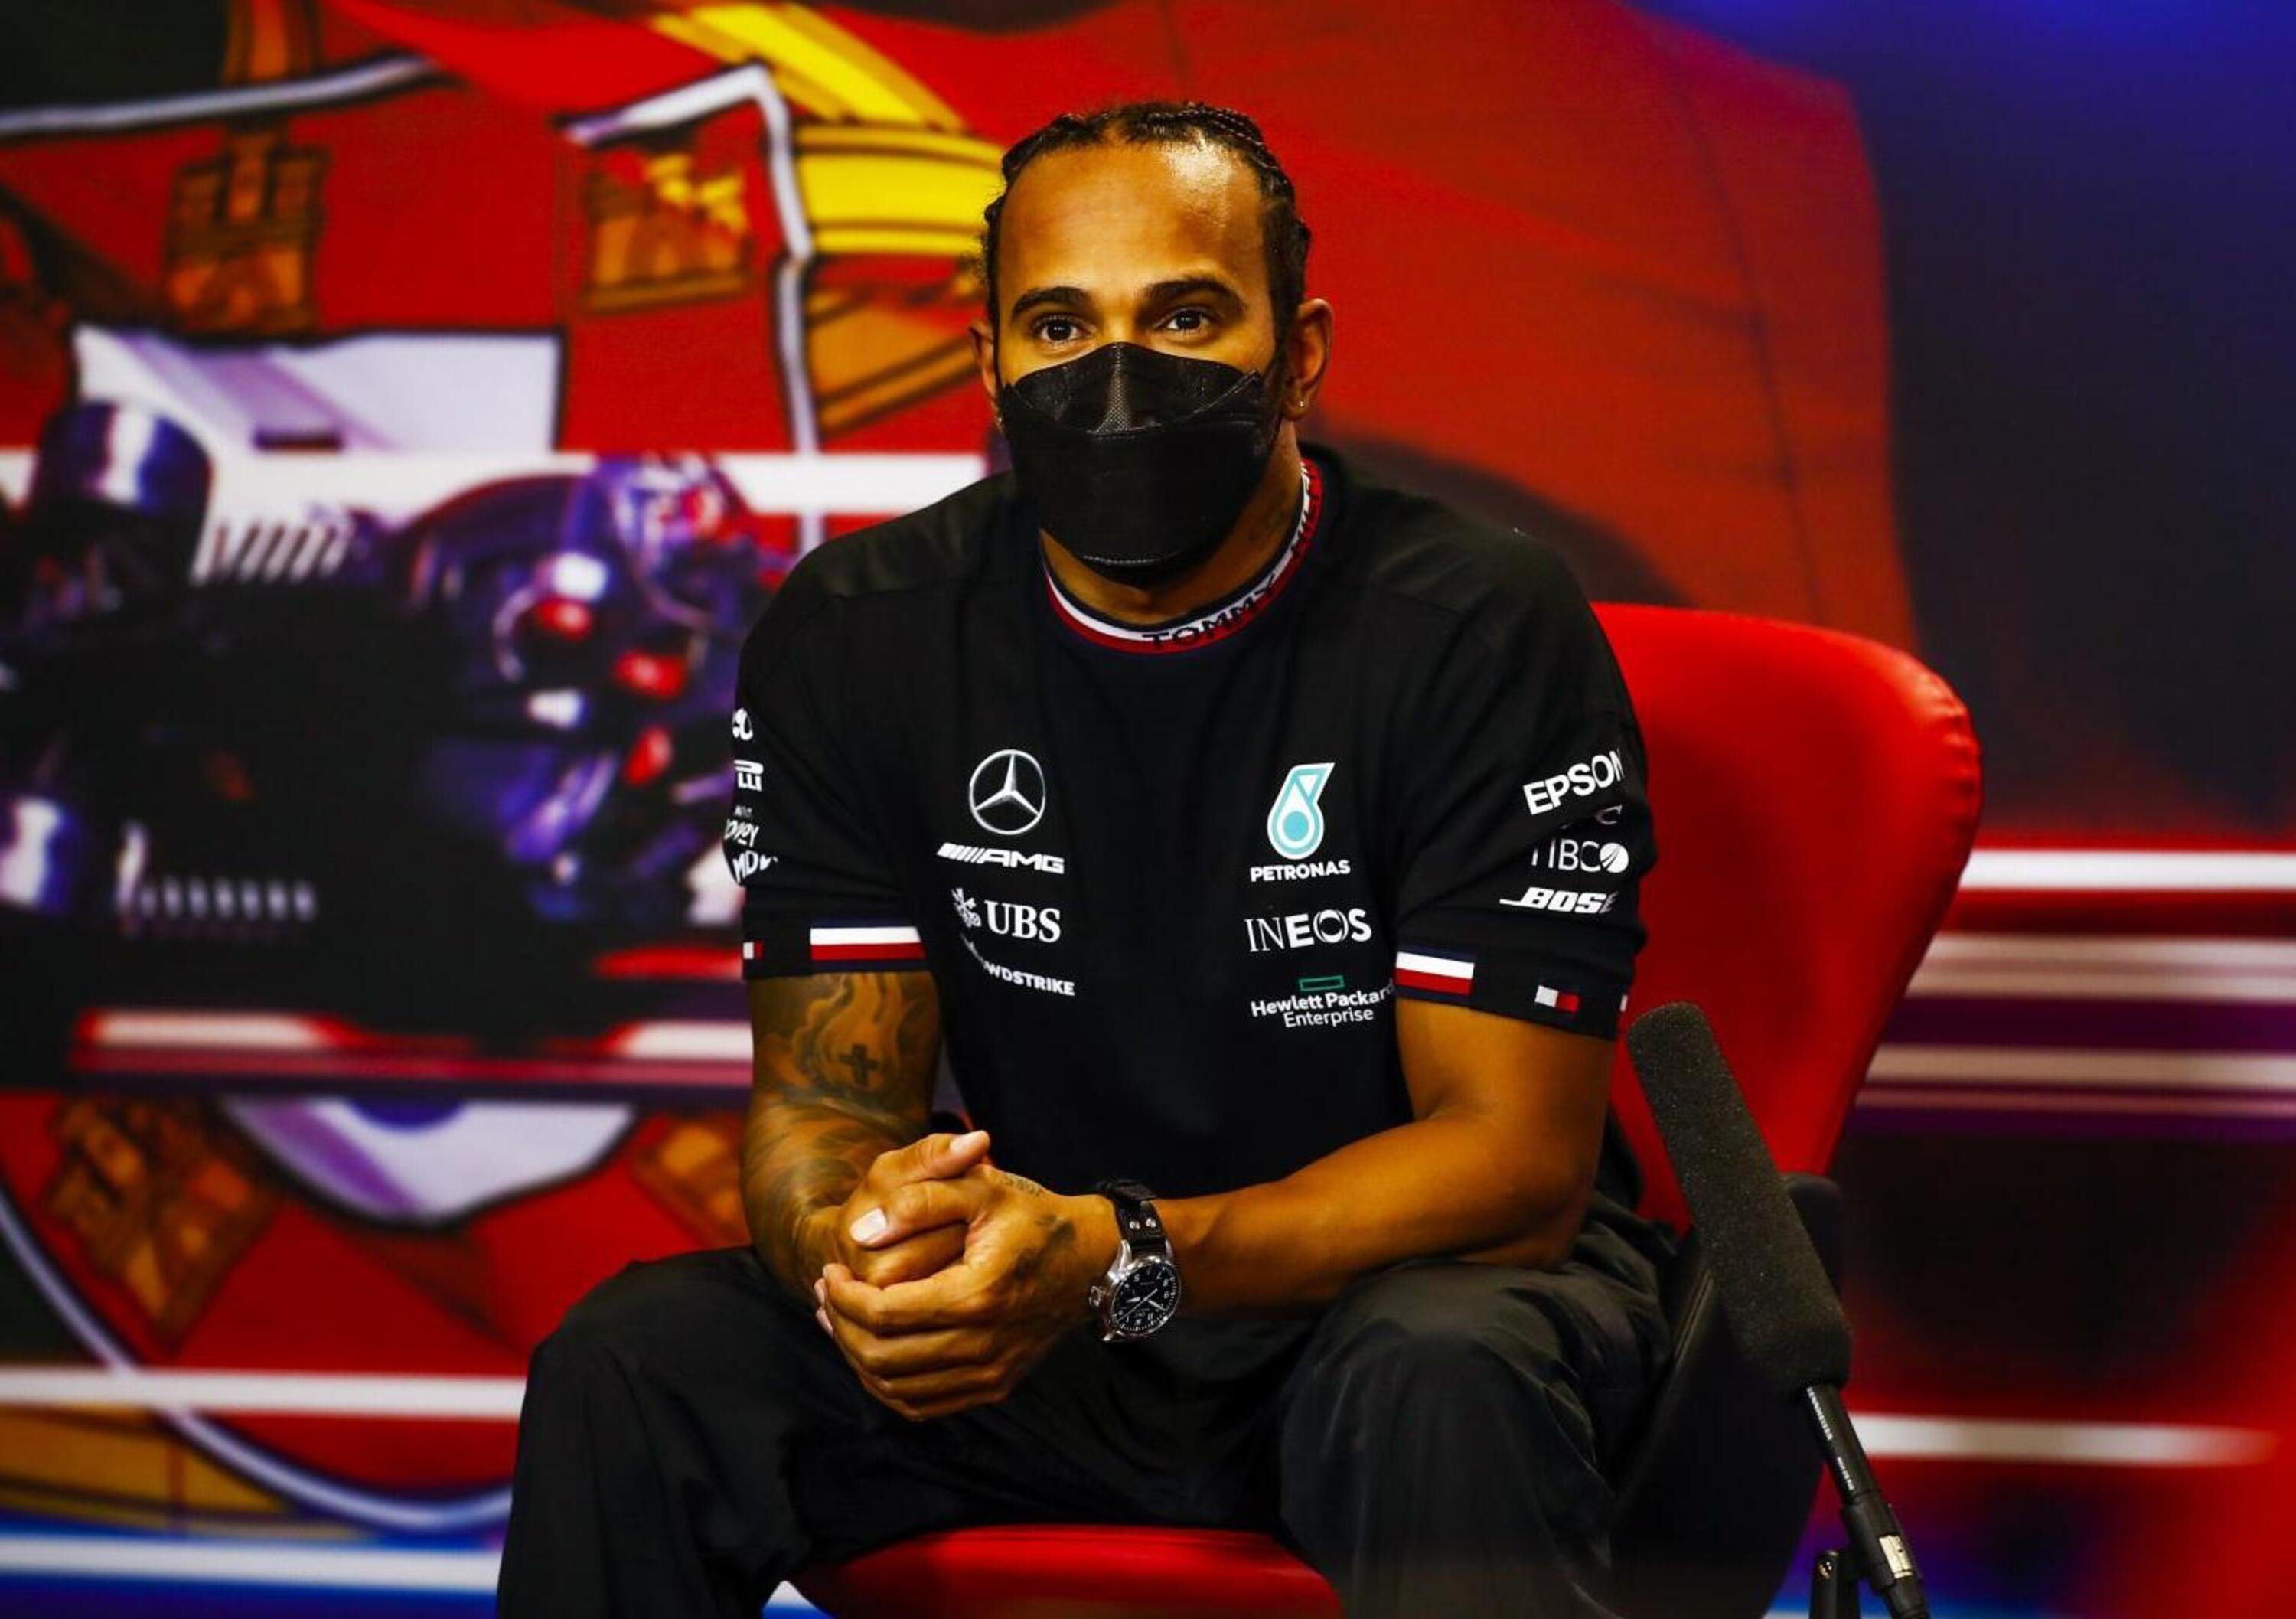 F1, Lewis Hamilton nella top ten di Forbes degli sportivi pi&ugrave; pagati